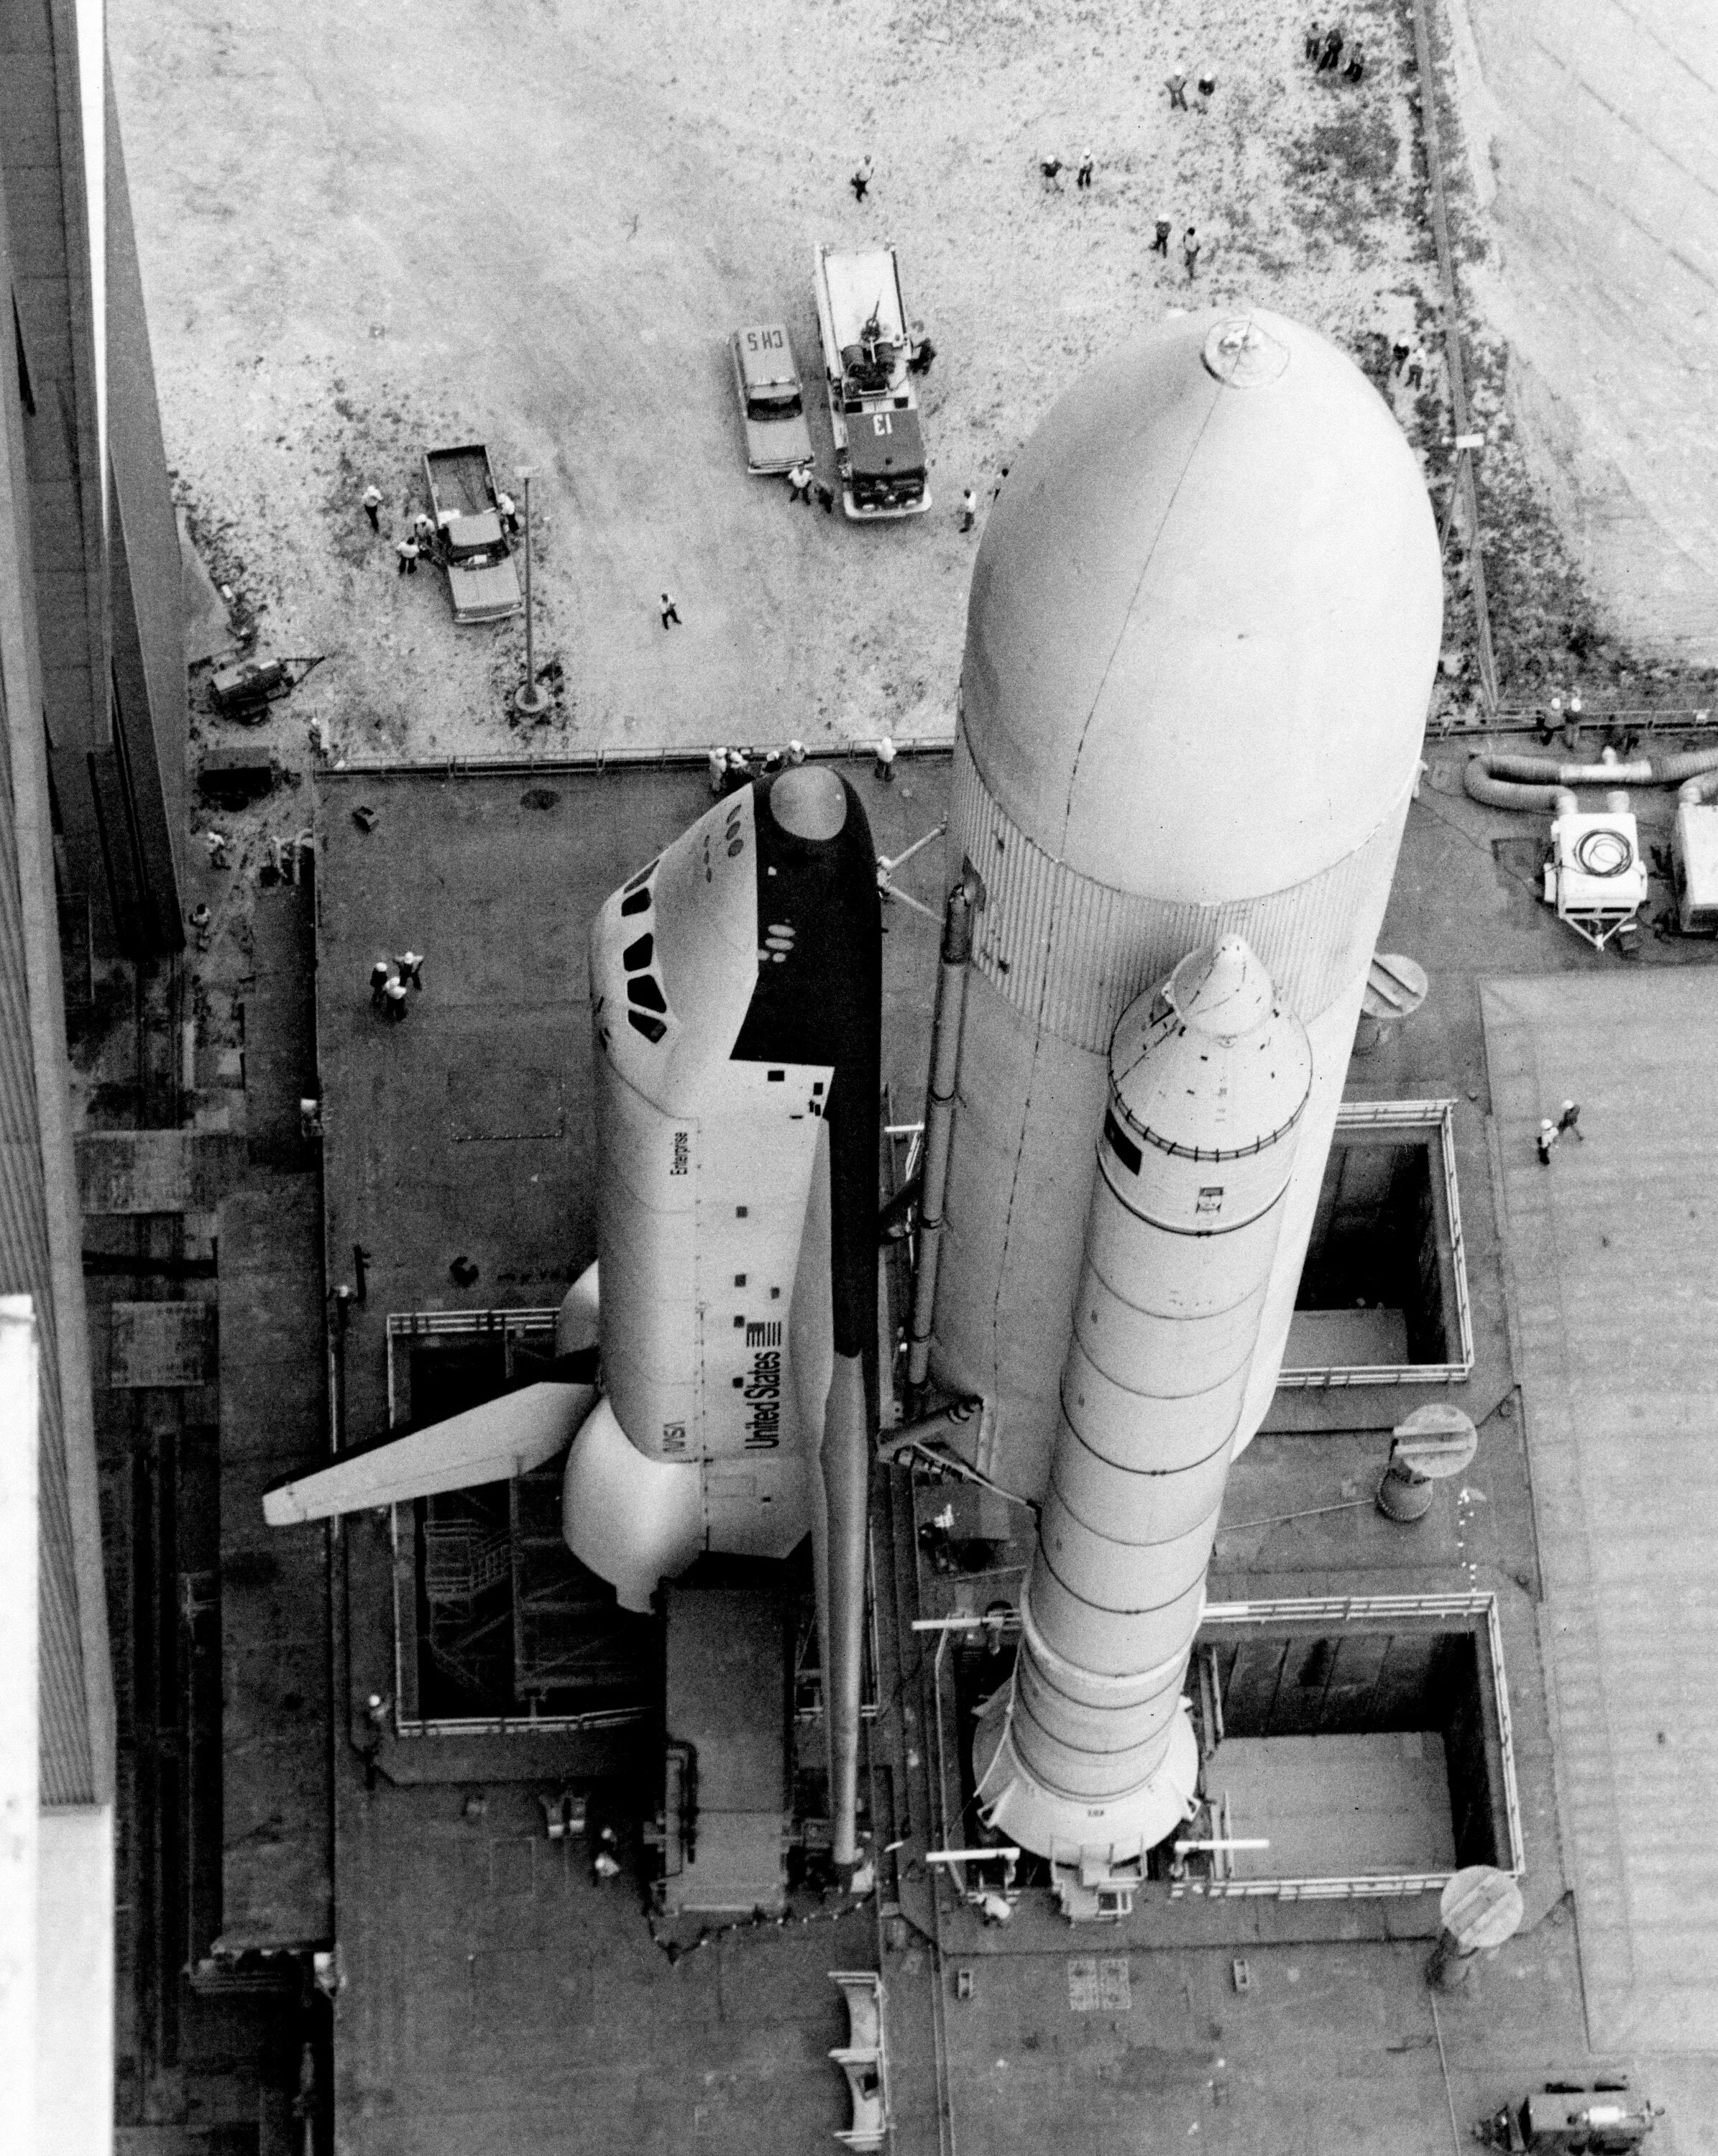 Первый космический челнок. Спейс шаттл космический корабль. Спейс шаттл 1981. Шаттл Колумбия 1981. Космический челнок НАСА.